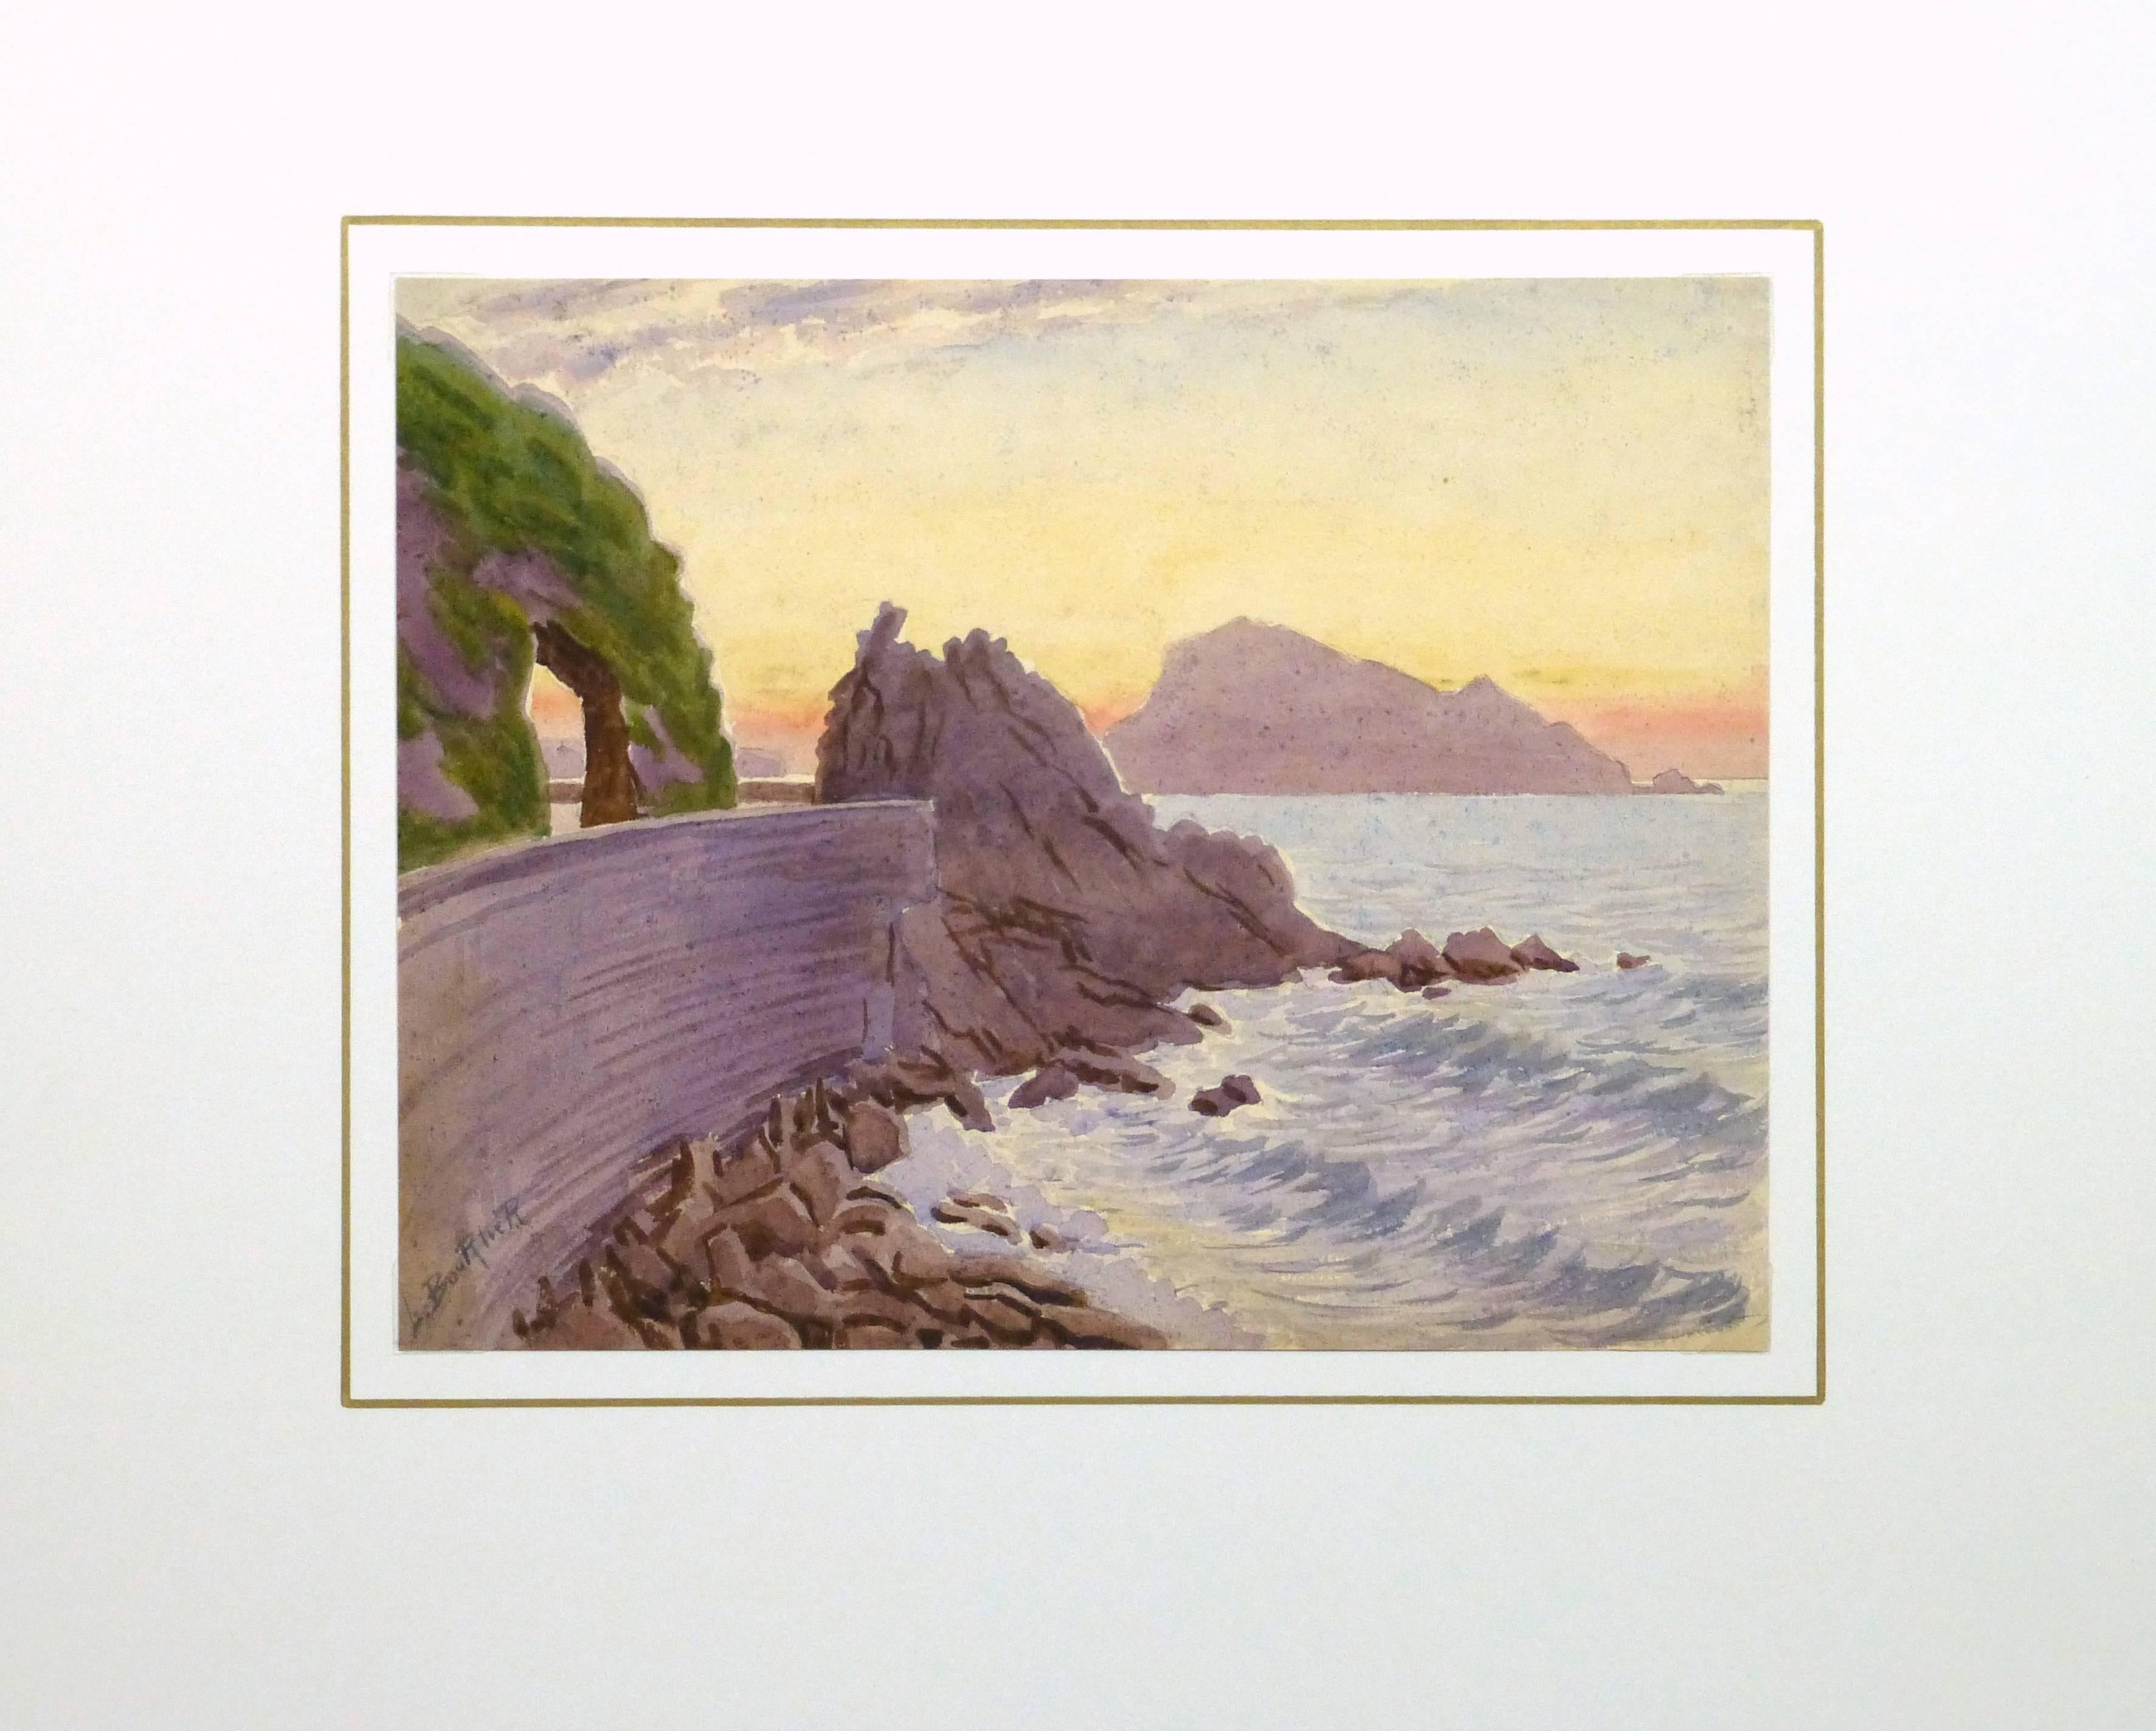 Beeindruckendes Aquarell eines schönen Sonnenuntergangs über einer Felsenküste an der Côte d'Azur von dem französischen Künstler L. Bourlier, um 1920. Signiert unten links. 

Originalkunstwerk auf Papier auf einem weißen Passepartout mit Goldrand.